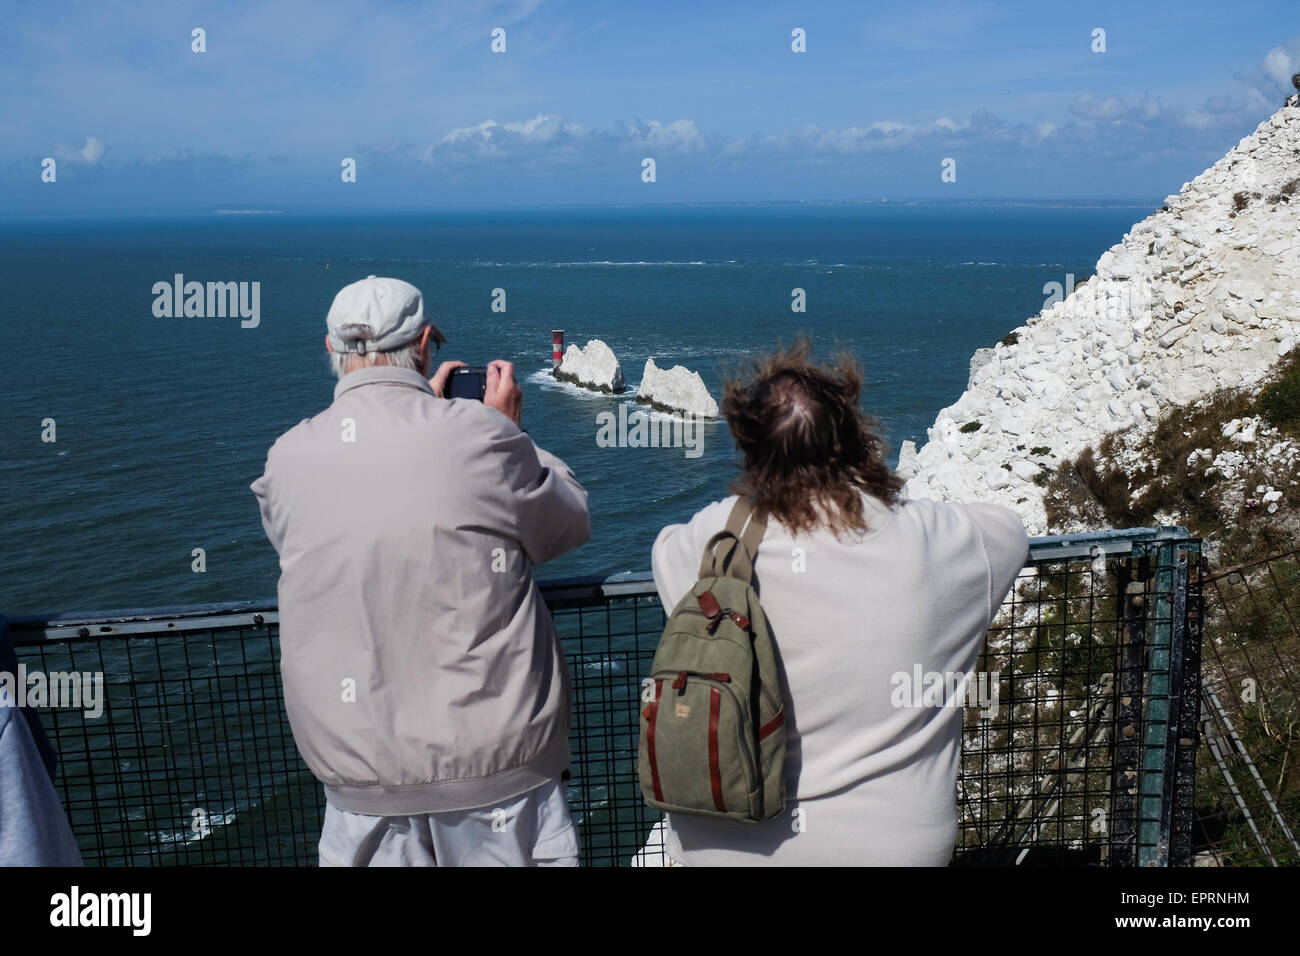 Les touristes de prendre des photos des aiguilles sur l'île de Wight, Angleterre. Banque D'Images